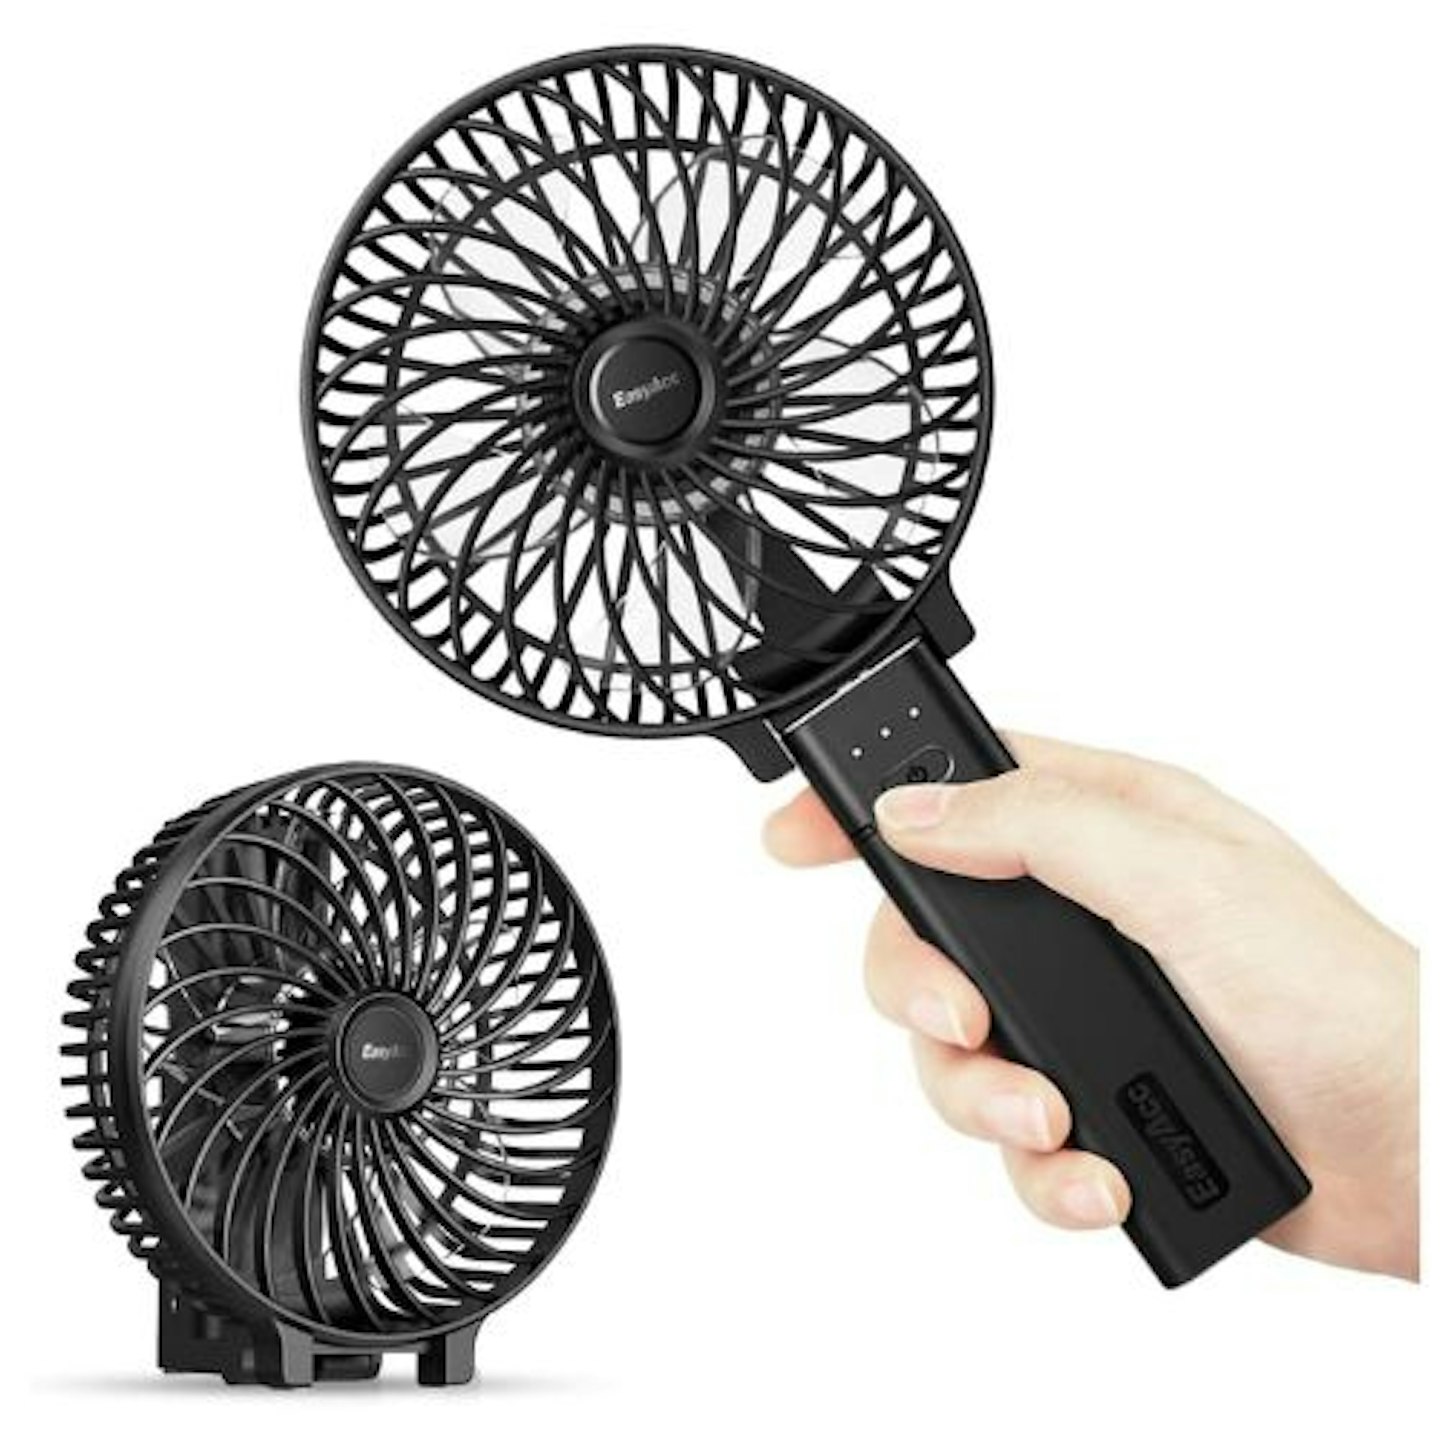 EasyAcc Handheld Fan